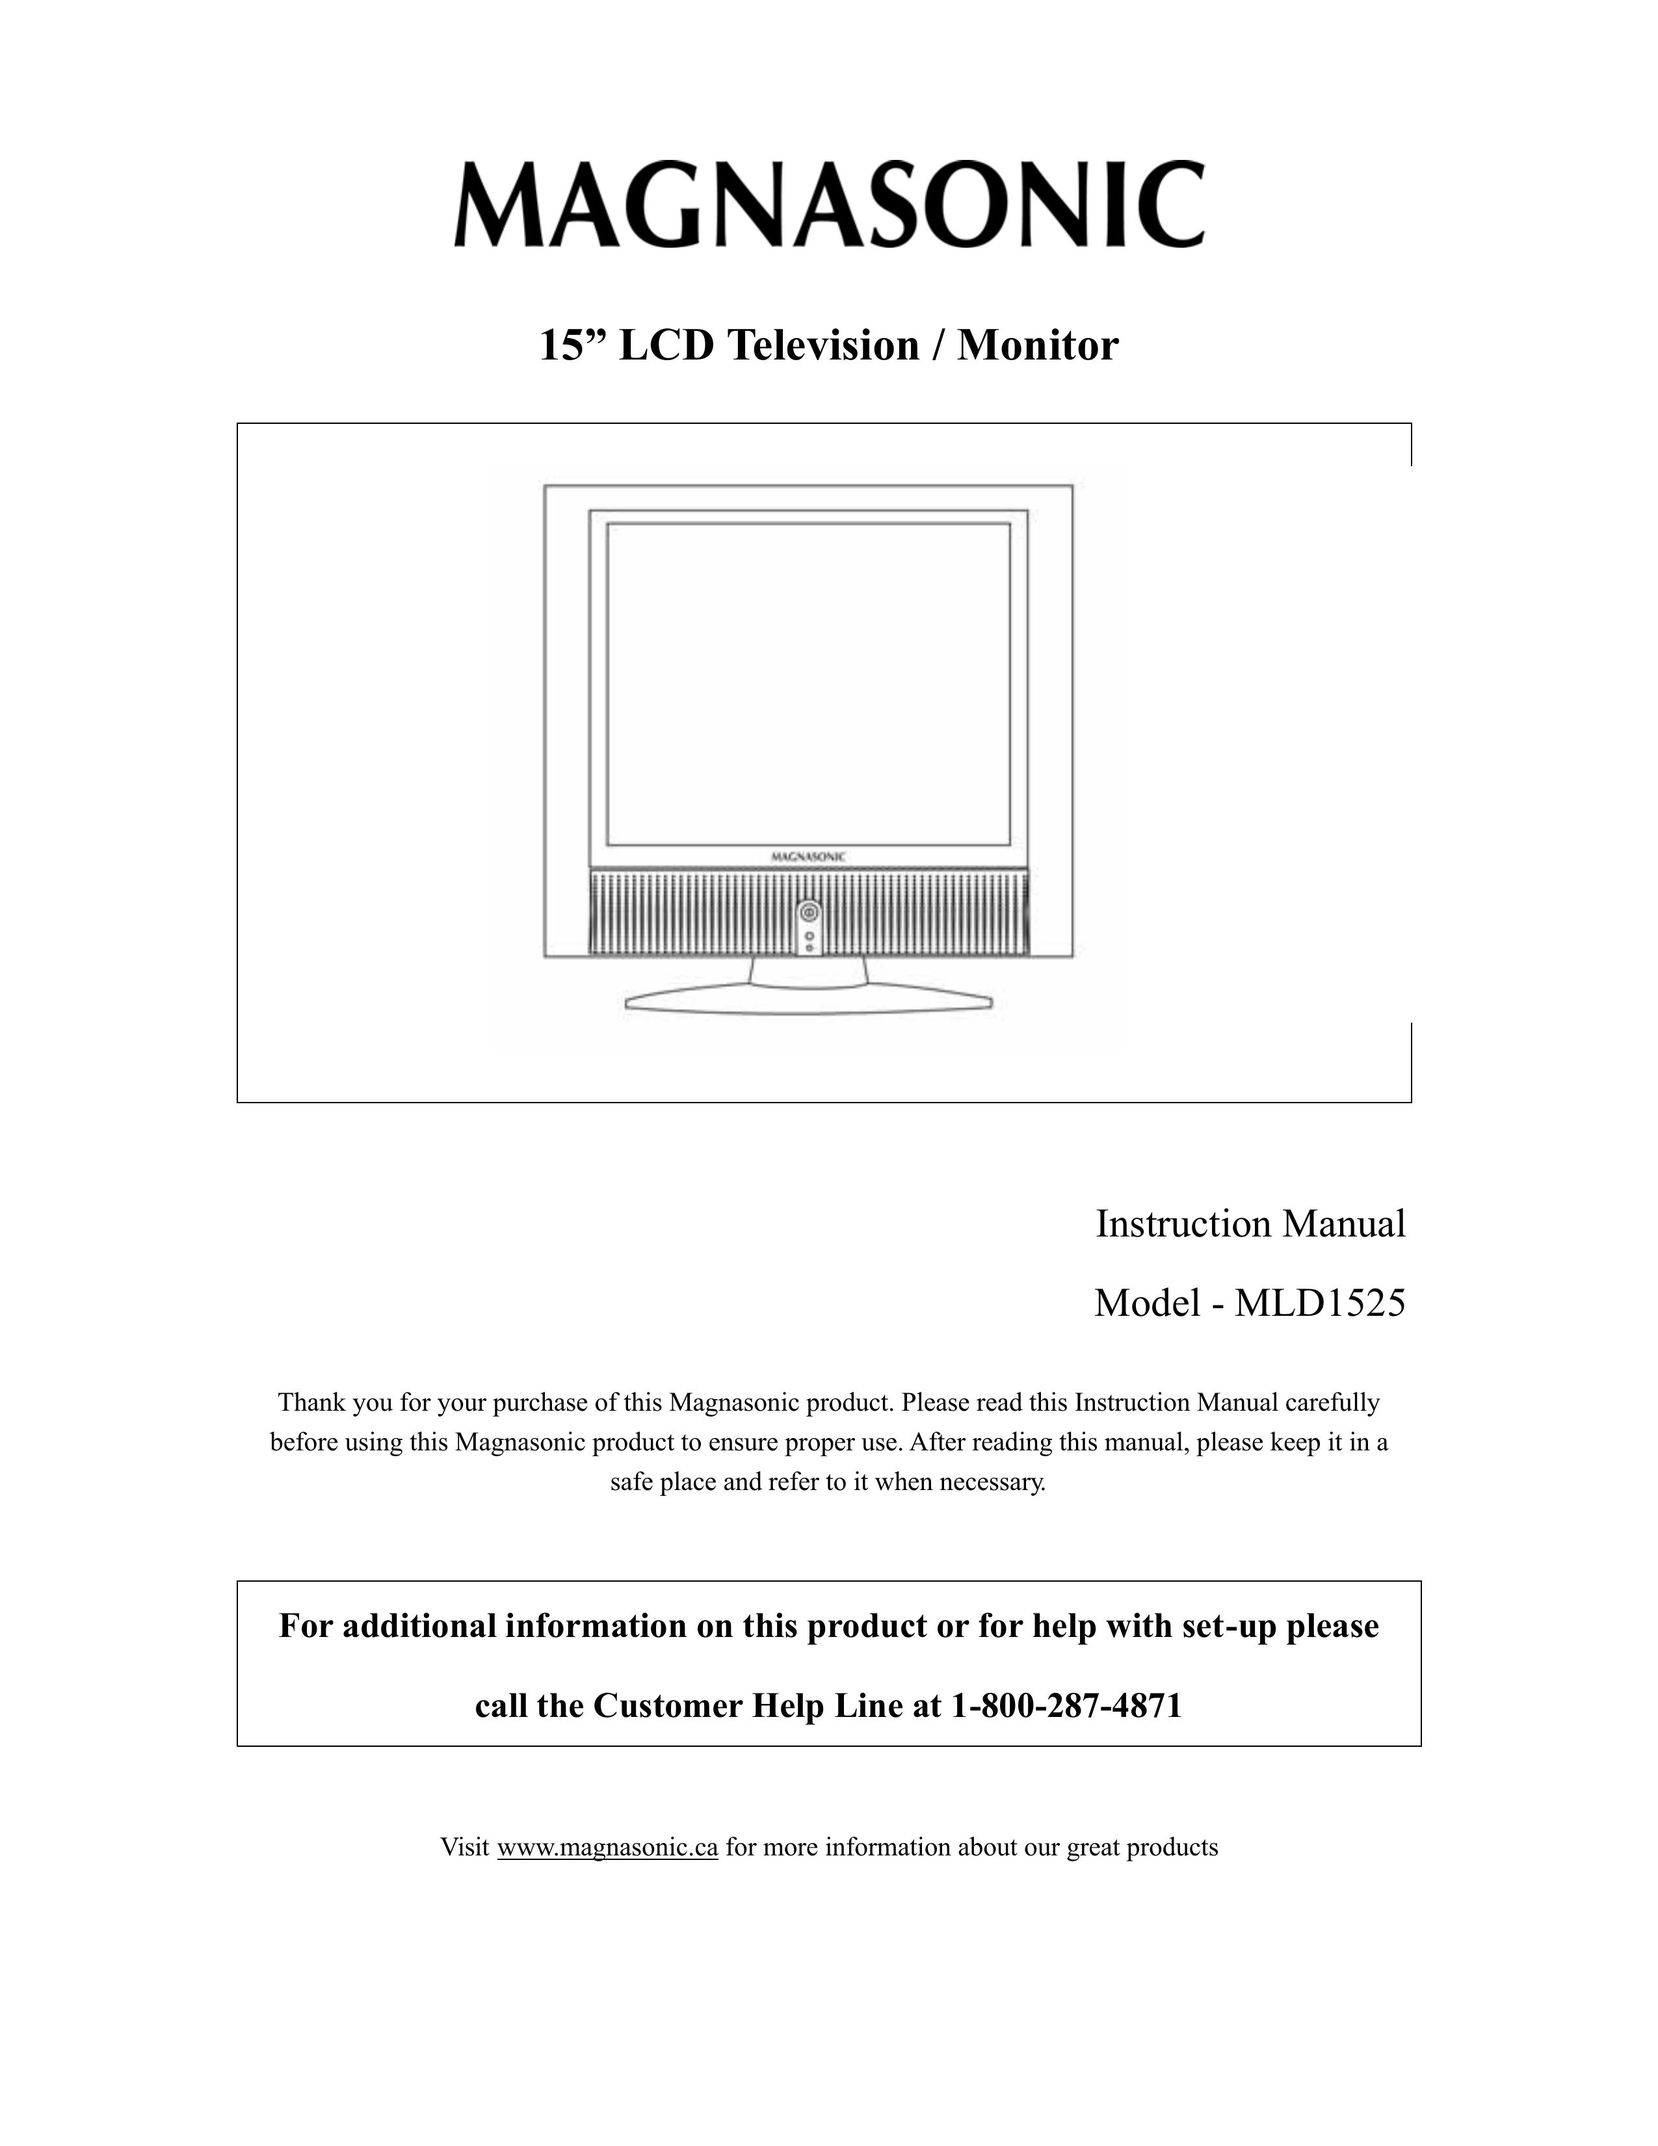 Magnasonic MLD1525 Flat Panel Television User Manual